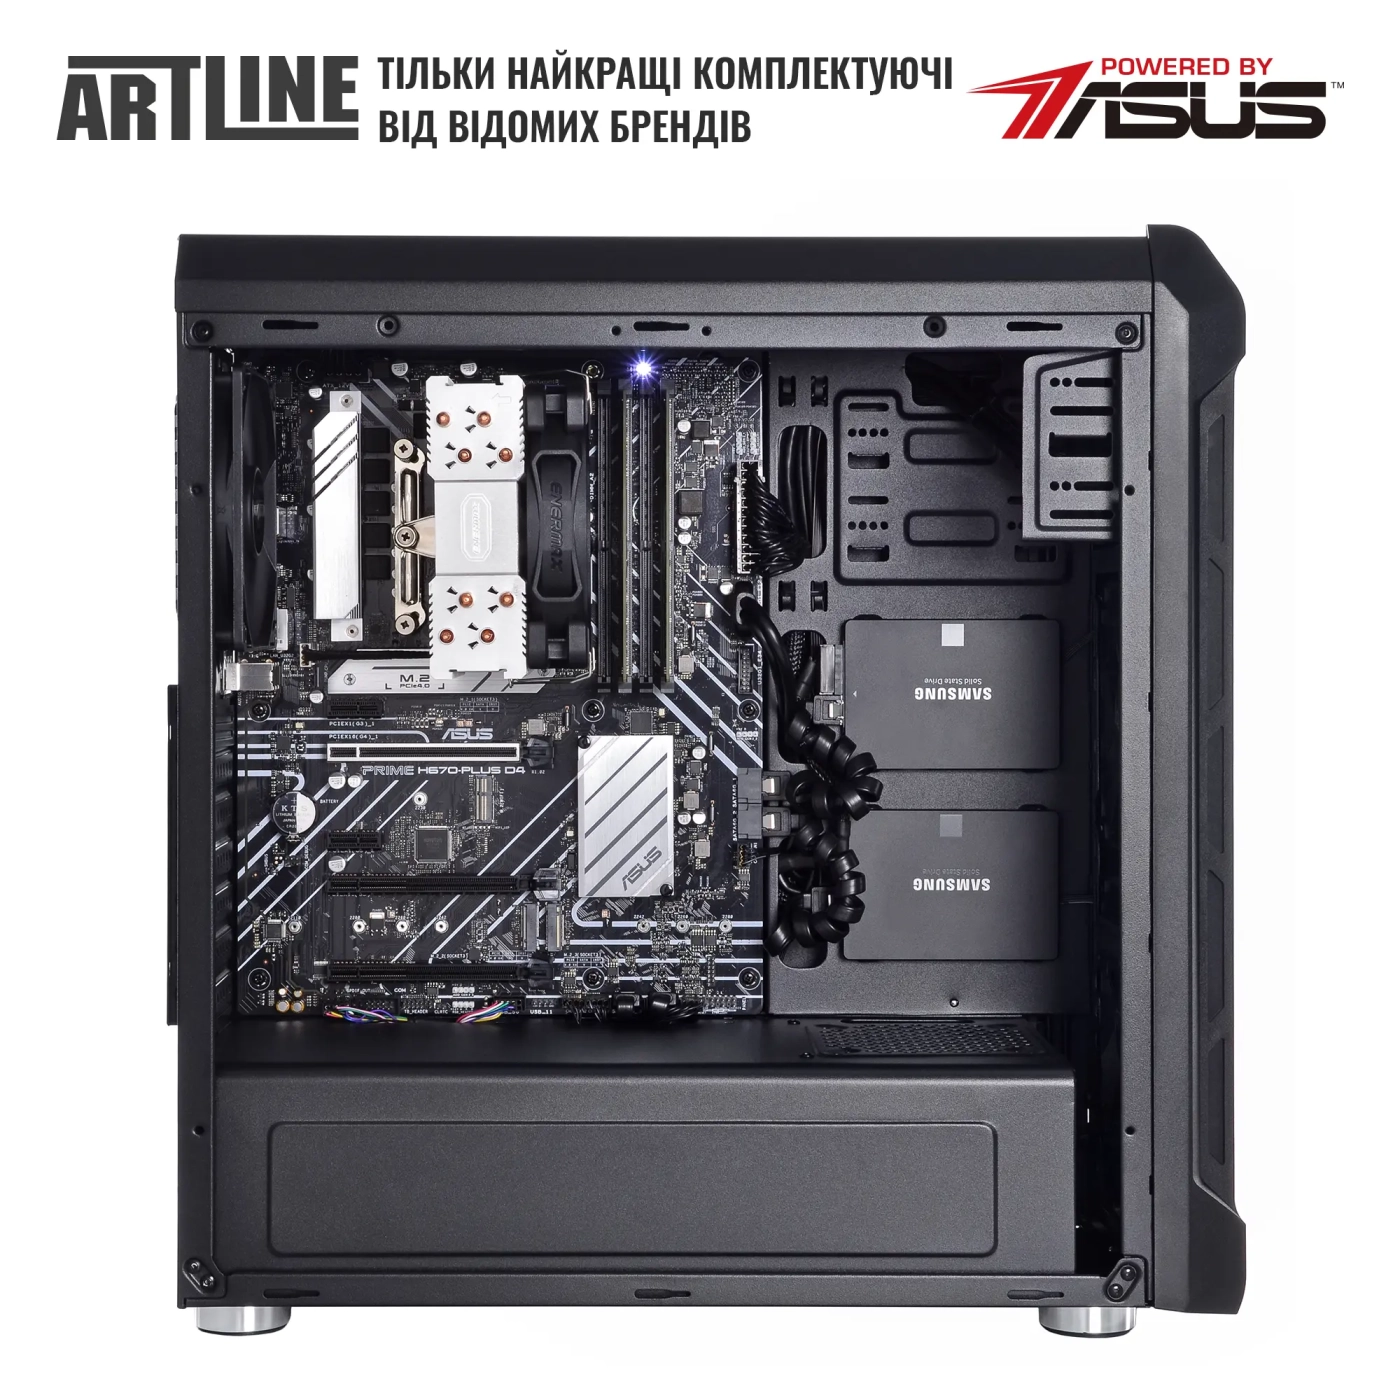 Купить Сервер ARTLINE Business T27 (T27v38) - фото 4